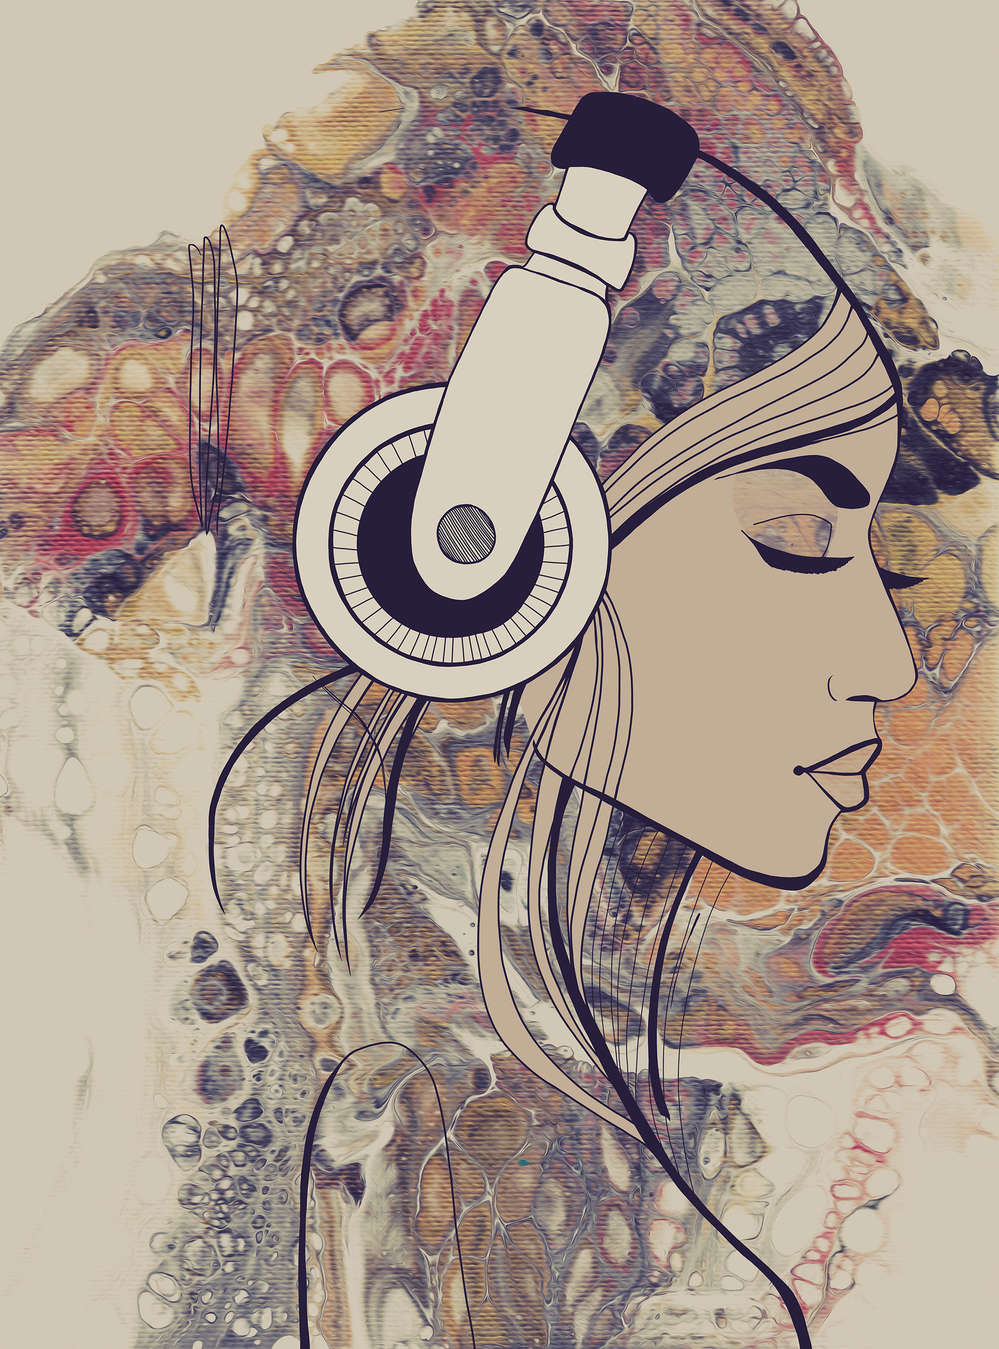             Fototapete Acryl & Line Art Frauenfigur mit Kopfhörern
        